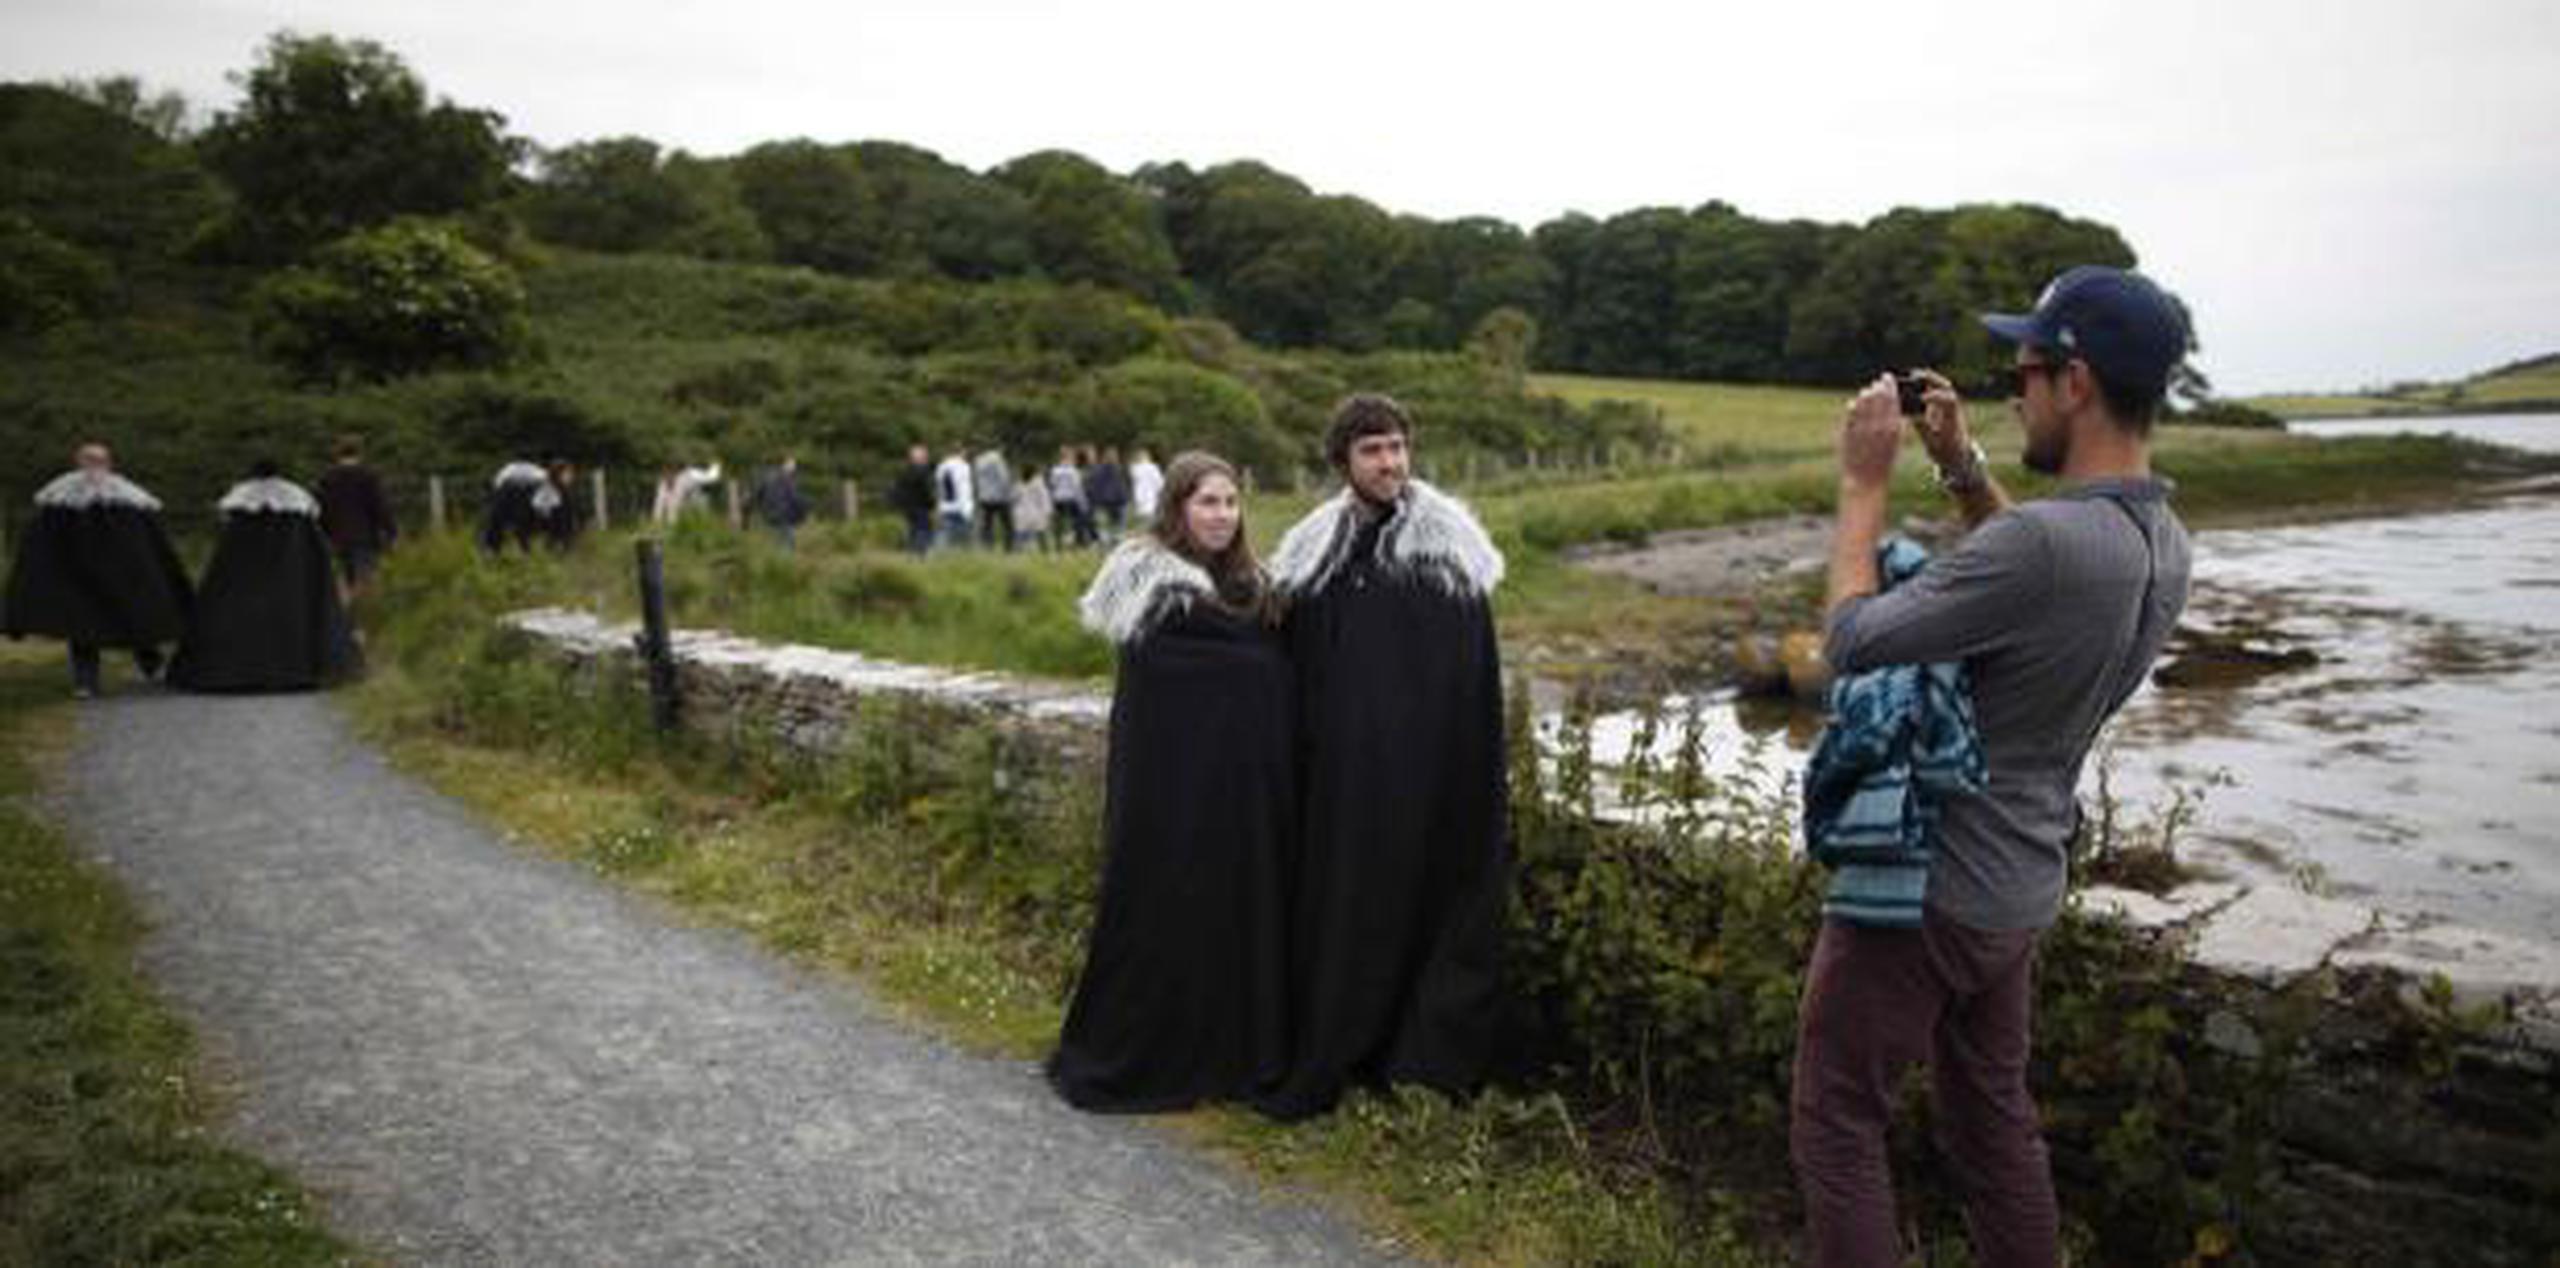 Fanáticos de "Game of Thrones" se toman fotos en camino al prado y castillo de Audley, en Strangford, en el norte de Irlanda, lugar que sirvió de escenario para la primera temporada de la serie. (AP / Peter Morrison)